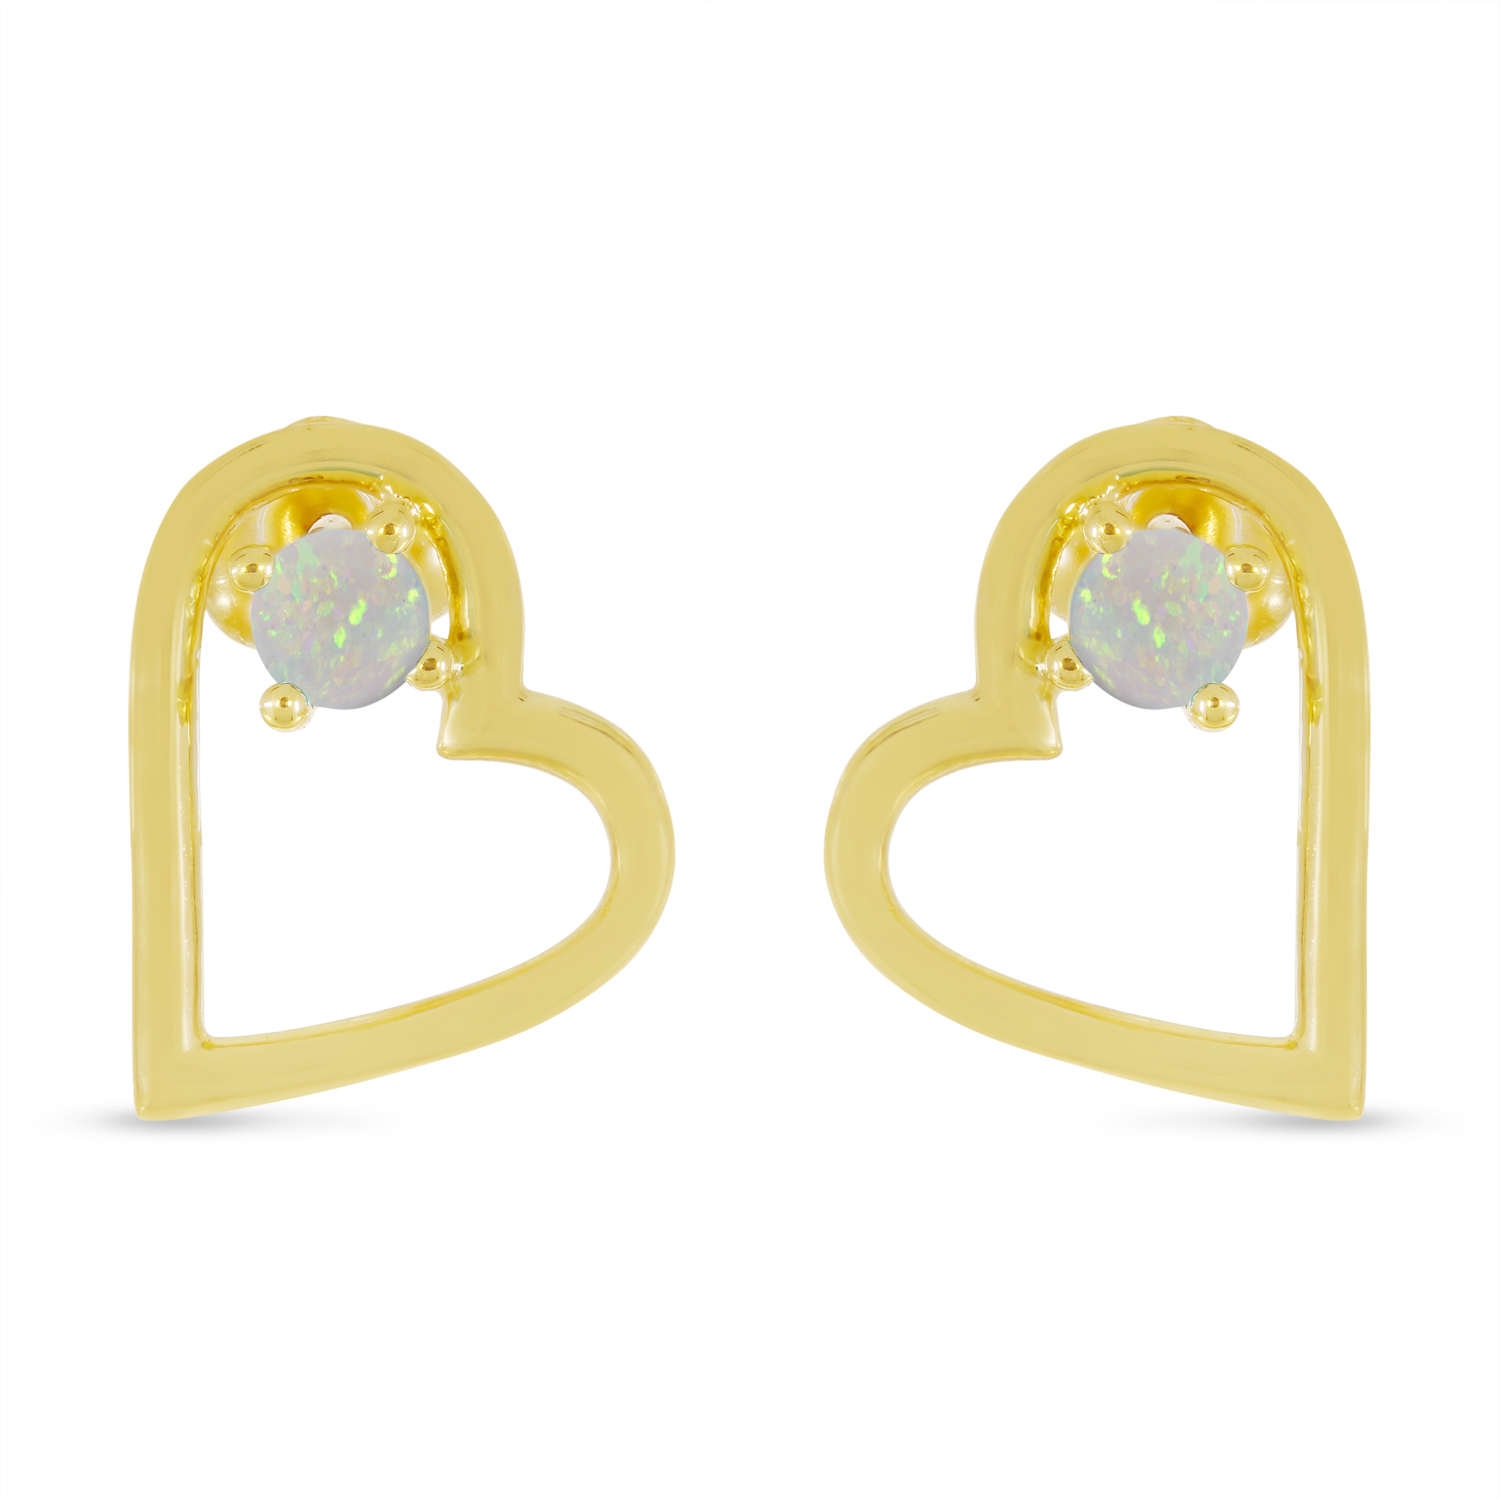 14K Yellow Gold Opal Open Heart Birthstone Earrings